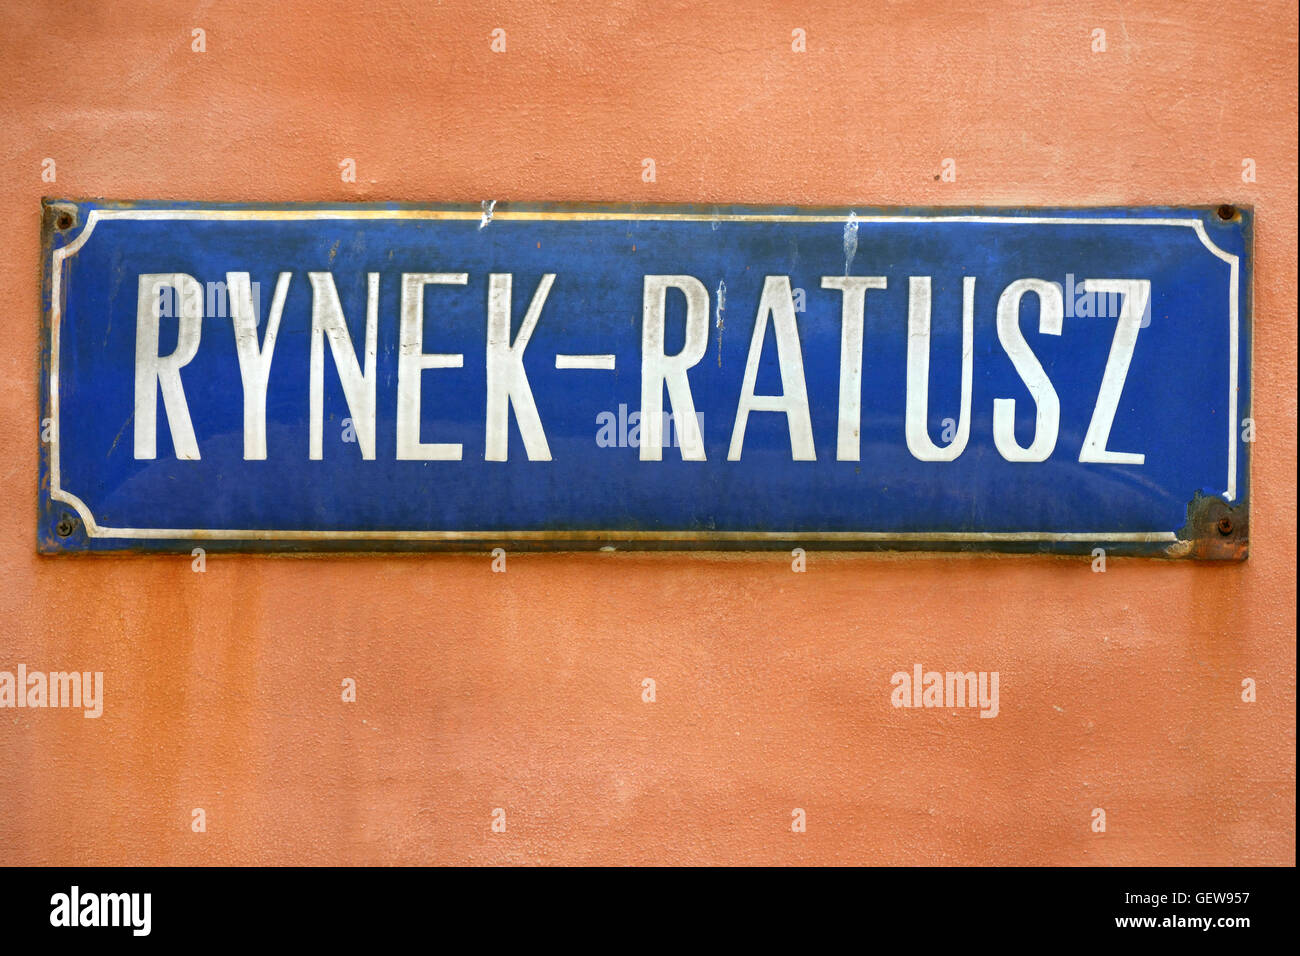 Signe de la rue Rynek Ratusz sur place du marché, dans la vieille ville de Wroclaw - Pologne. Banque D'Images